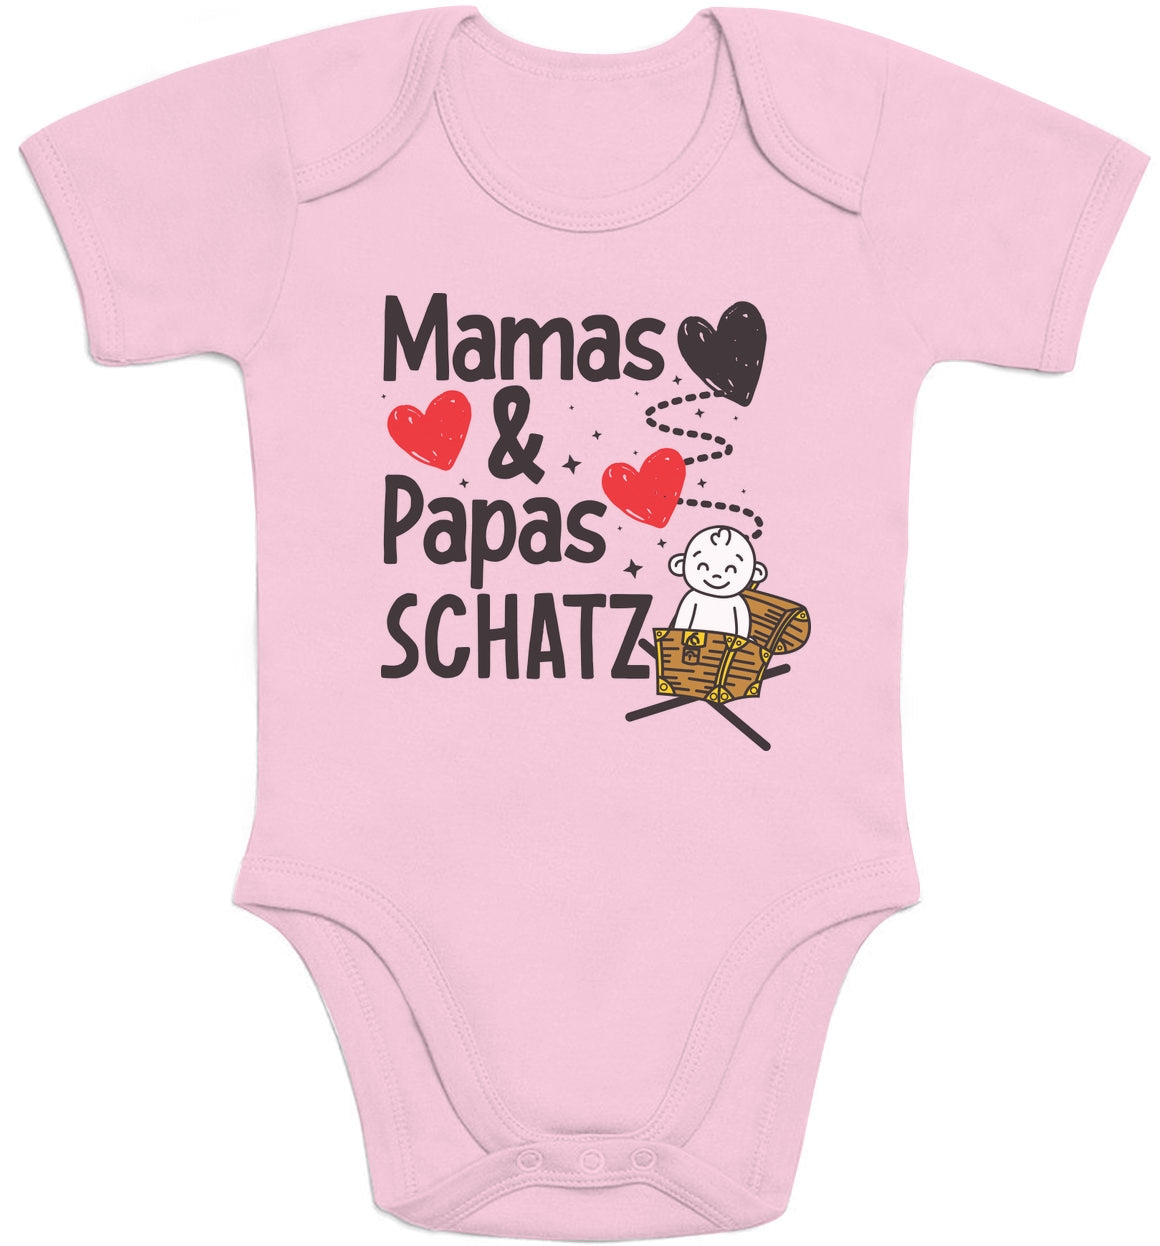 Babybody mit Spruch Mama & Papas Schatz Baby Body Kurzarm-Body